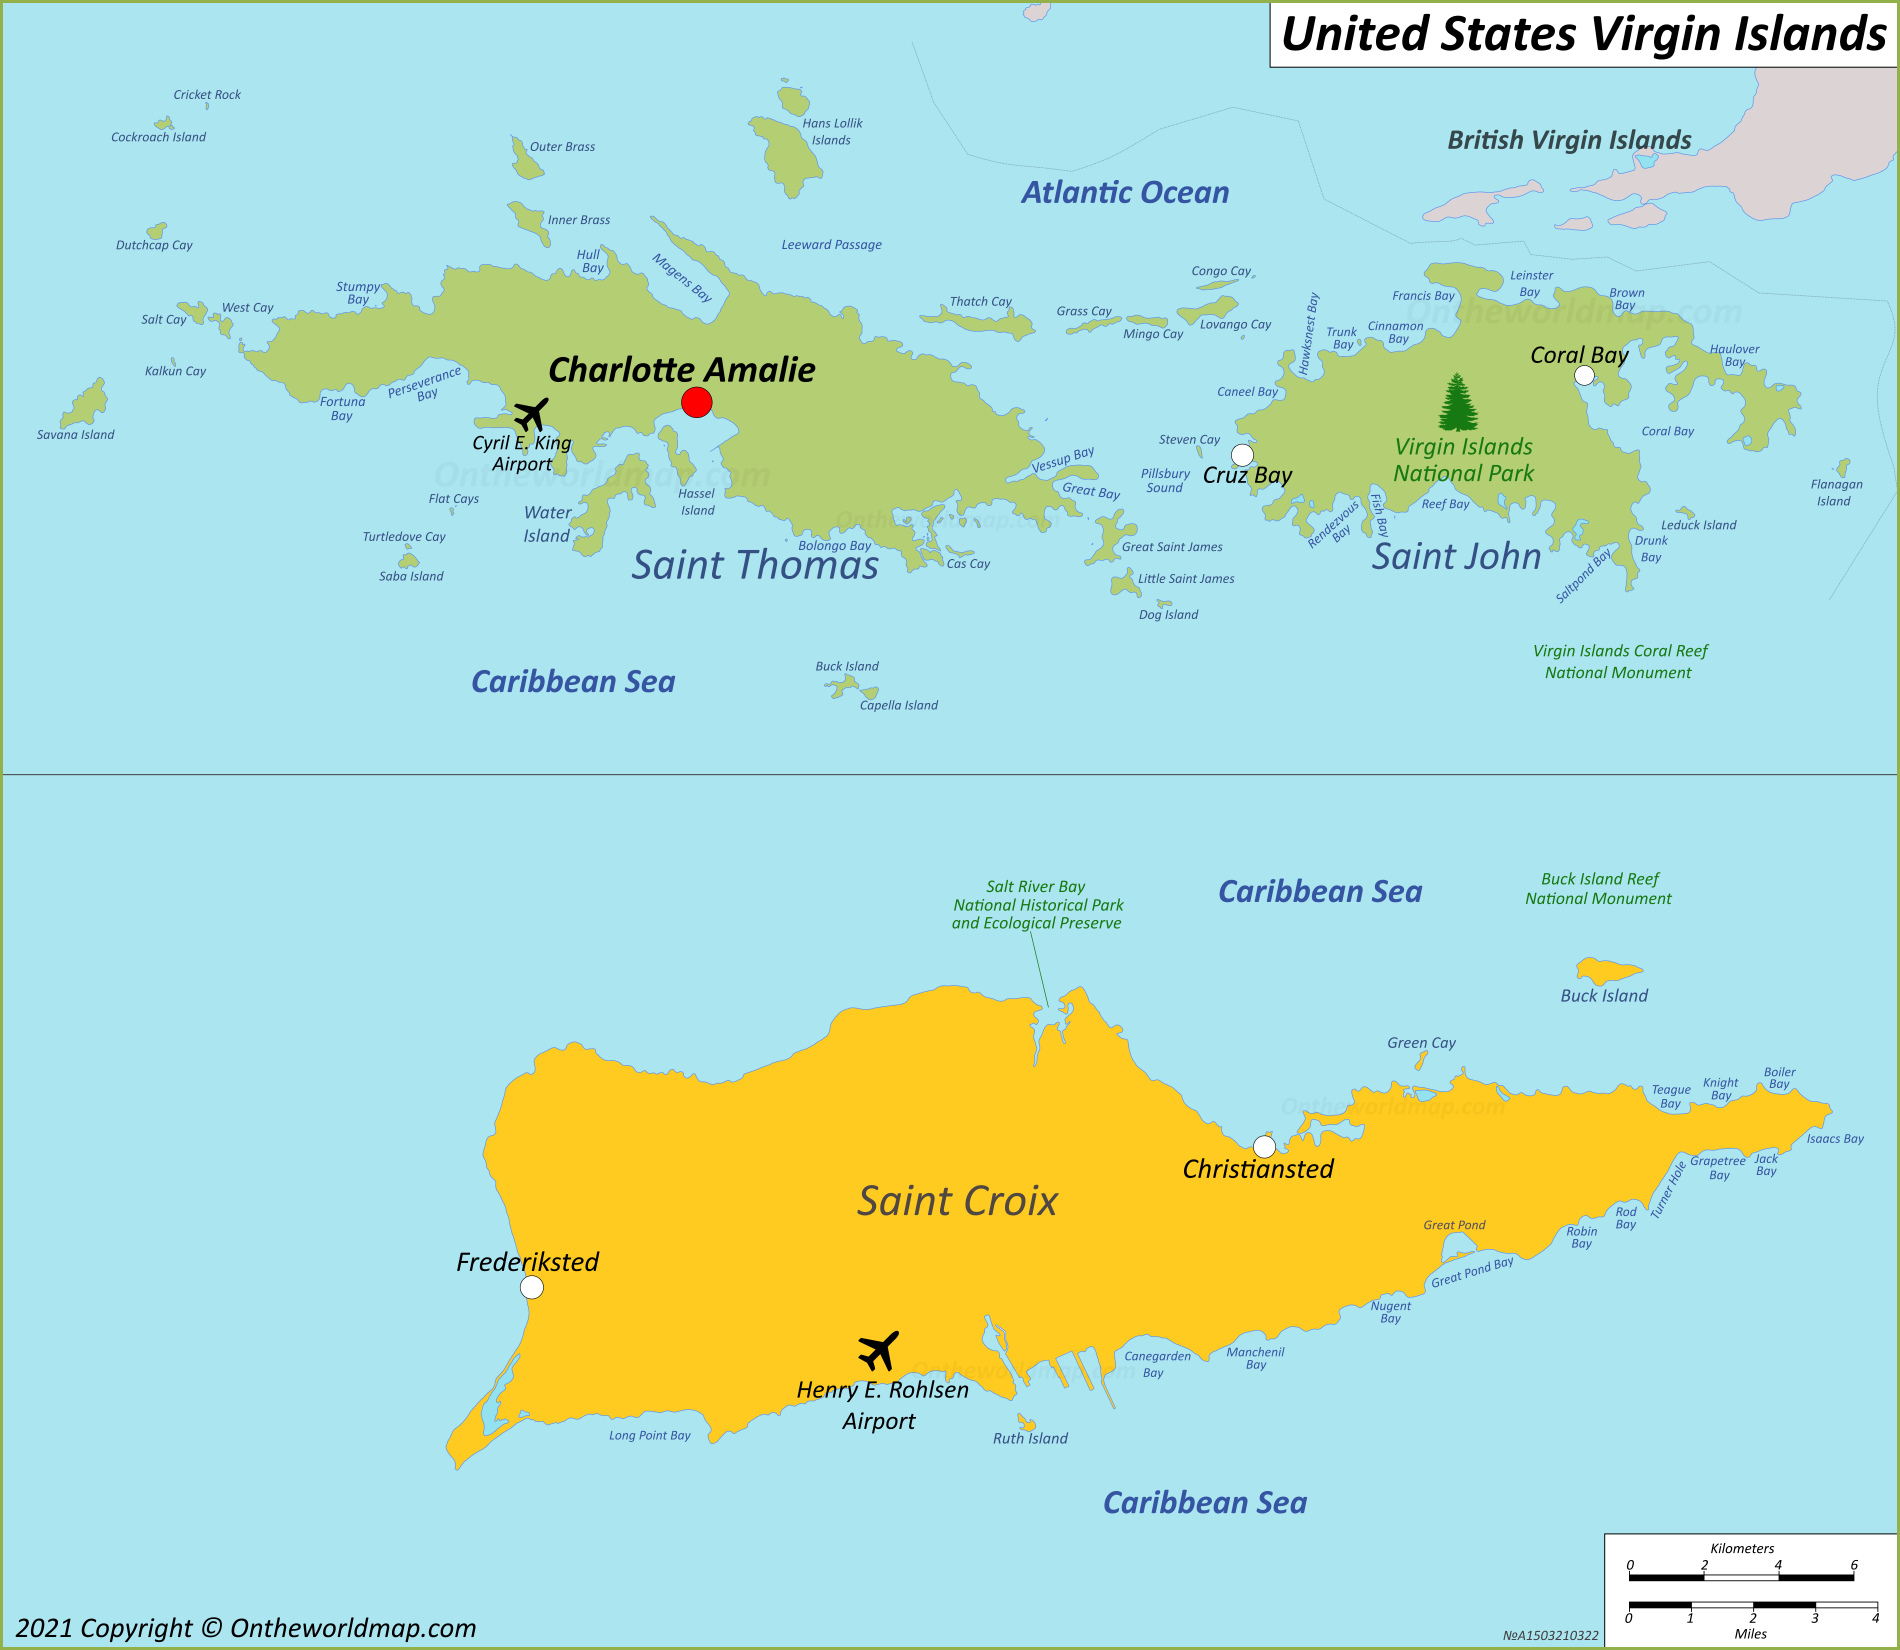 Map of U.S. Virgin Islands